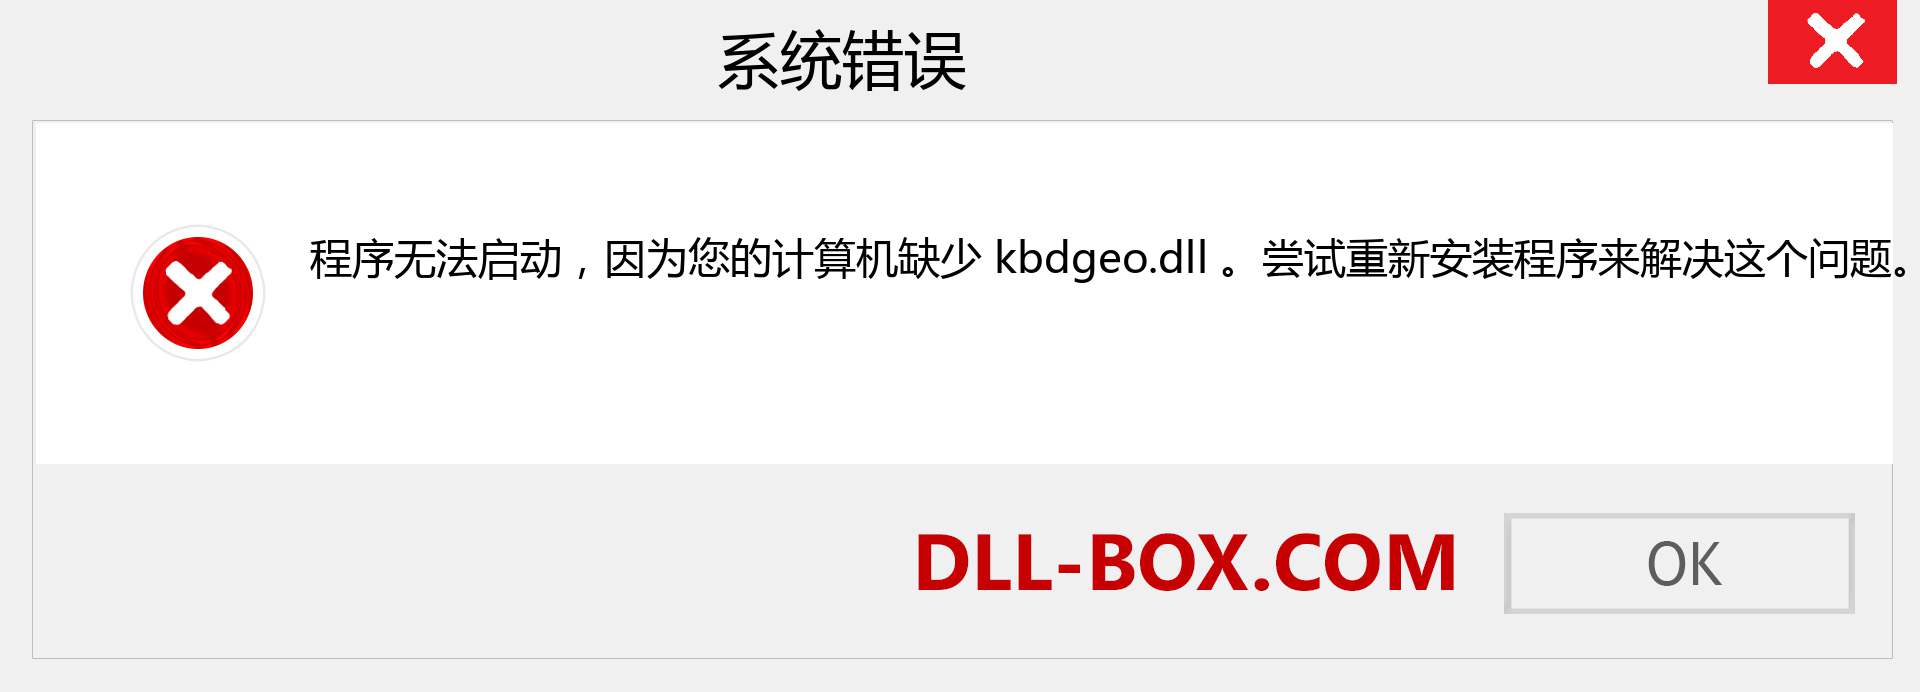 kbdgeo.dll 文件丢失？。 适用于 Windows 7、8、10 的下载 - 修复 Windows、照片、图像上的 kbdgeo dll 丢失错误